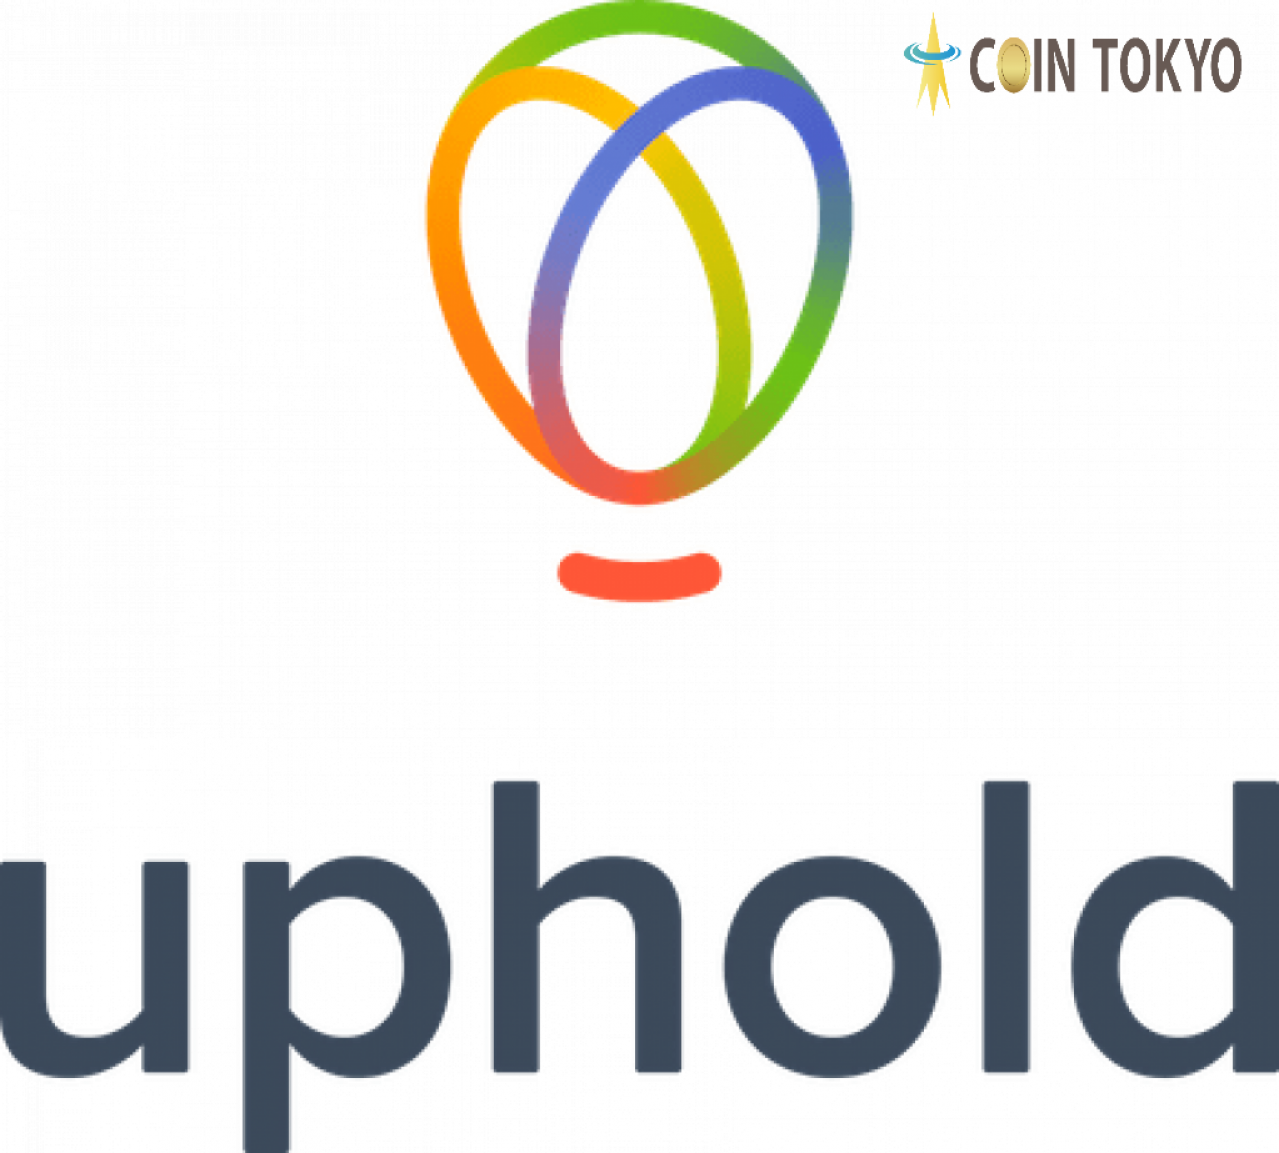 大型投资应用程序Uphold提供由加密货币资产担保的贷款= 5枚代币，例如XRP和BCH +虚拟货币新闻网站Coin Tokyo